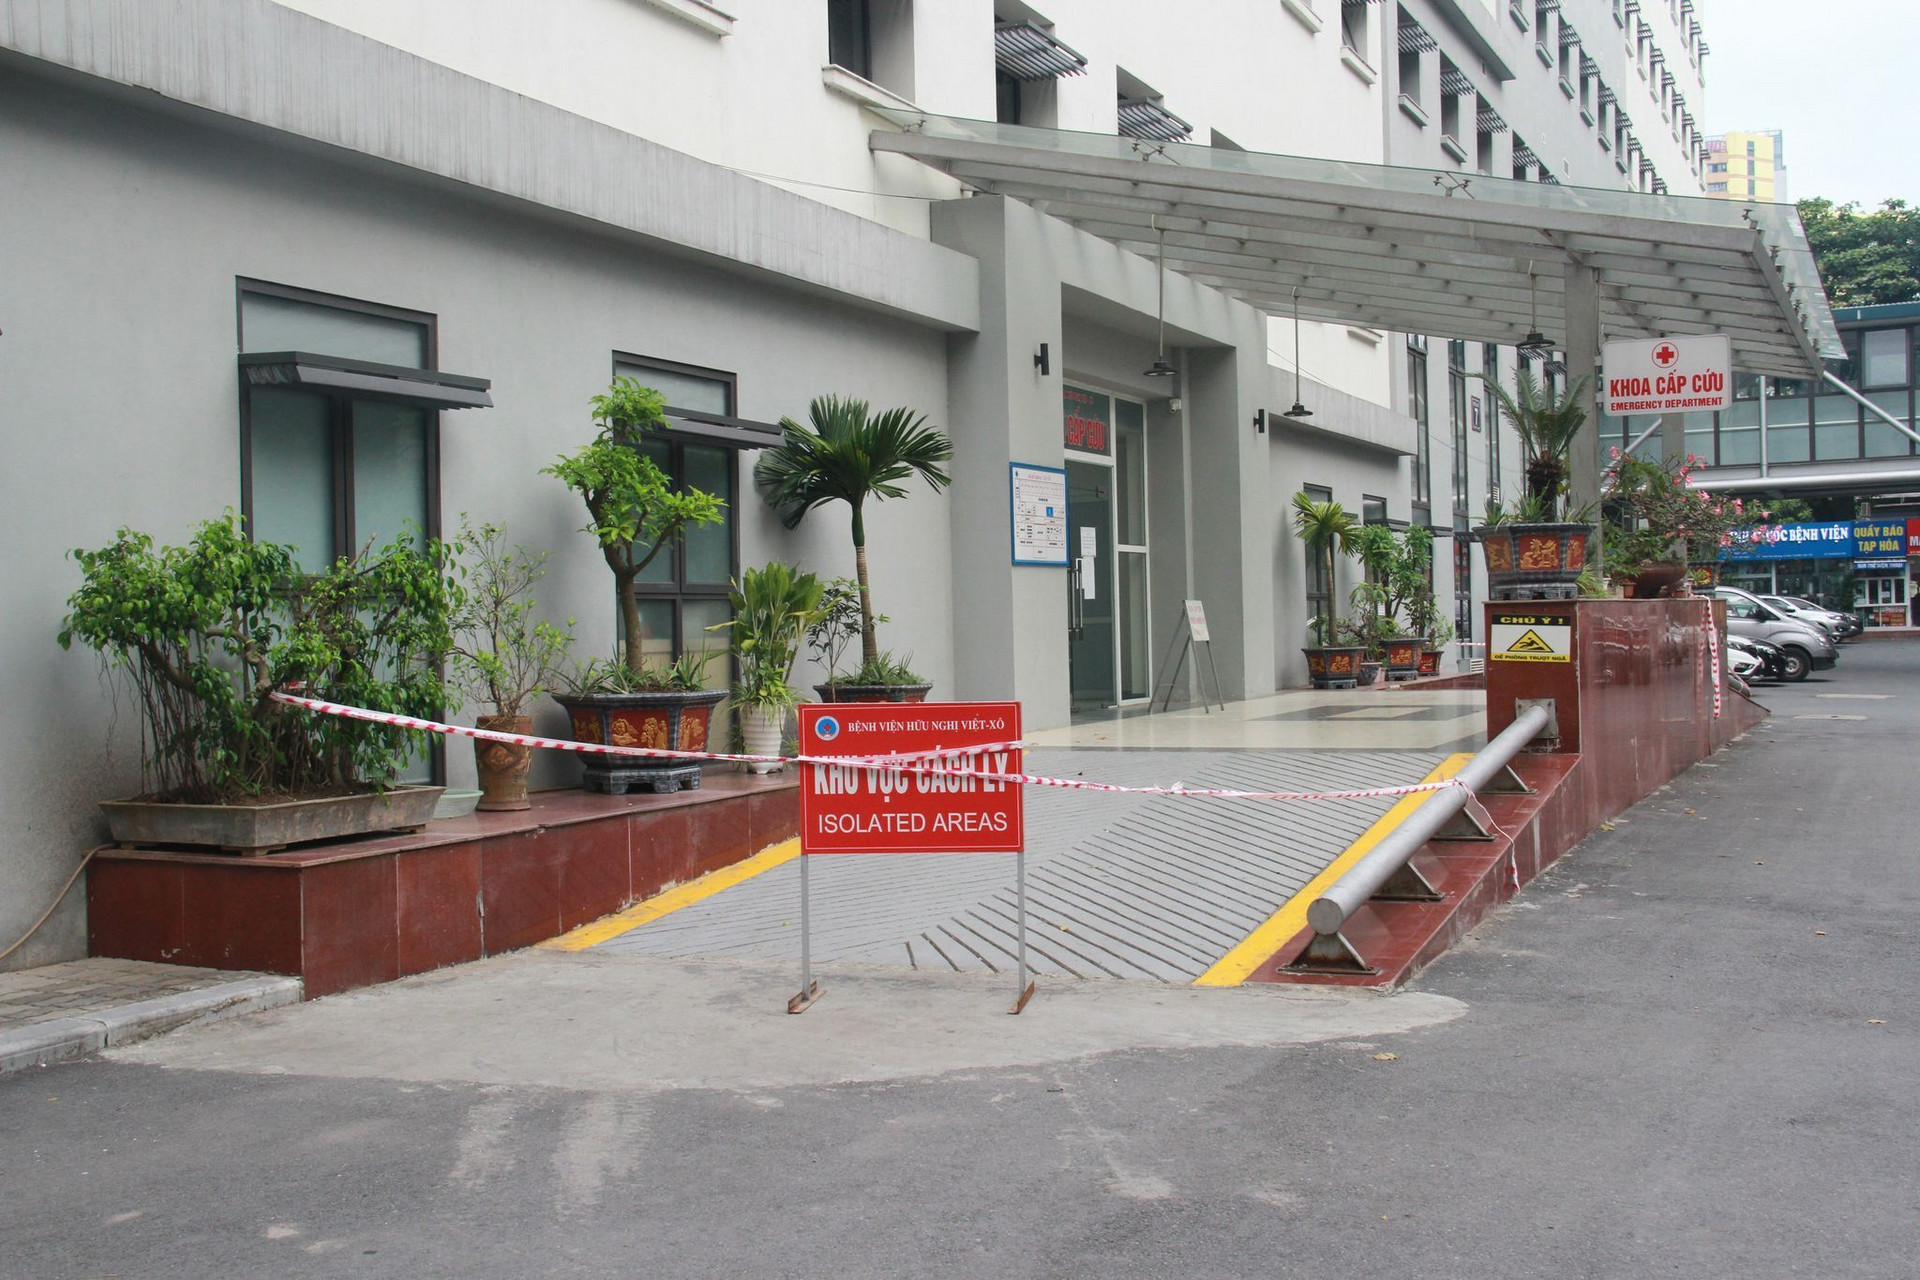 Hà Nội: Phong toả khoa Cấp cứu Bệnh viện Hữu nghị  - 1